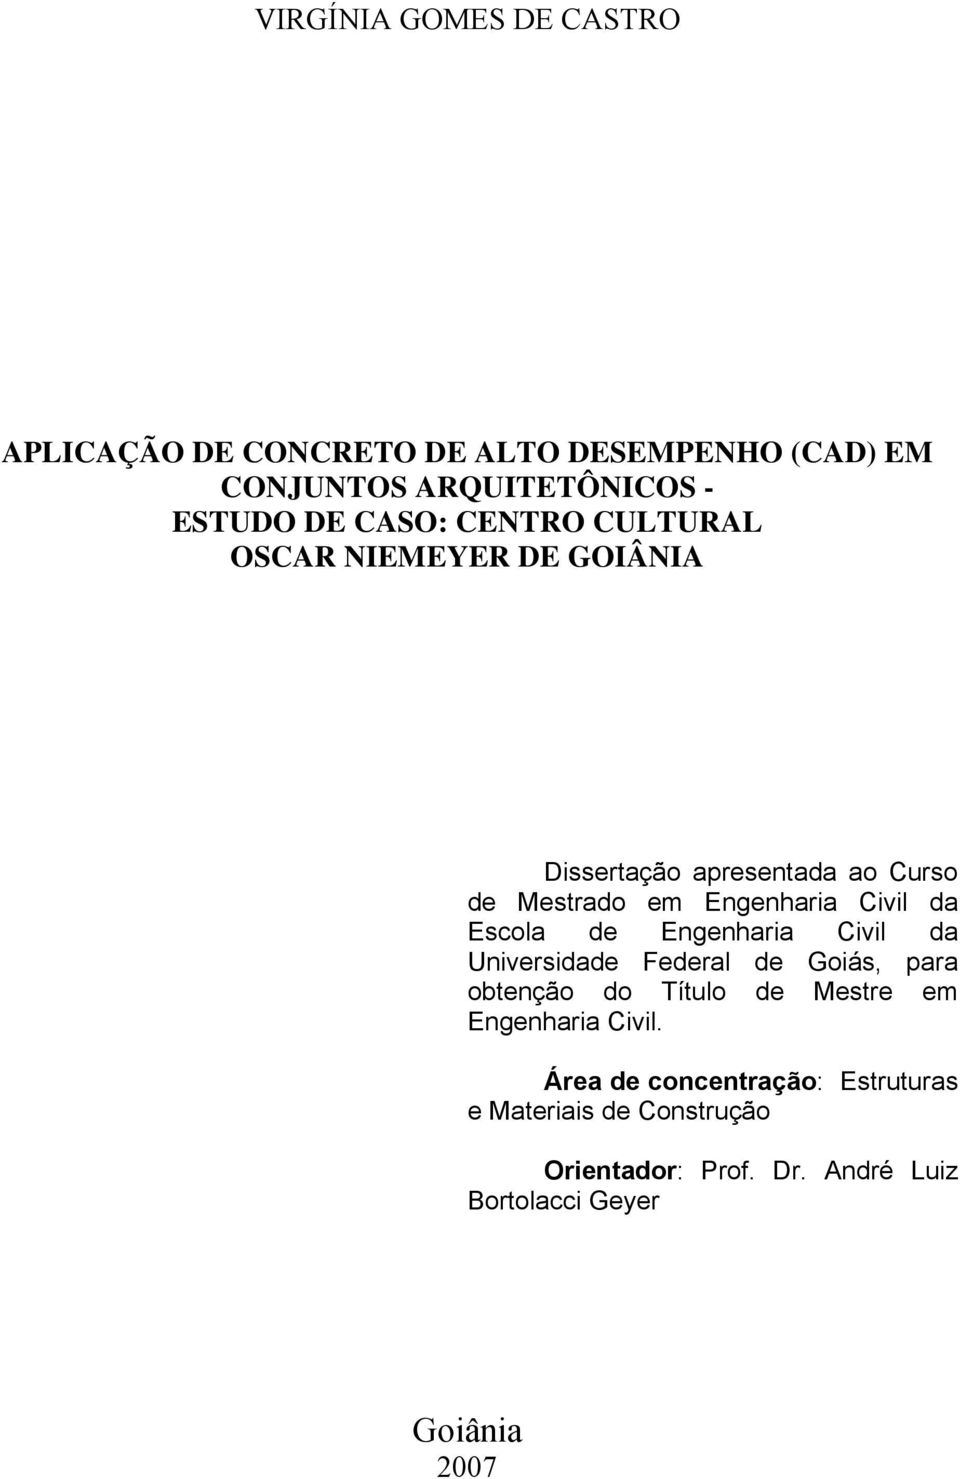 Escola de Engenharia Civil da Universidade Federal de Goiás, para obtenção do Título de Mestre em Engenharia Civil.